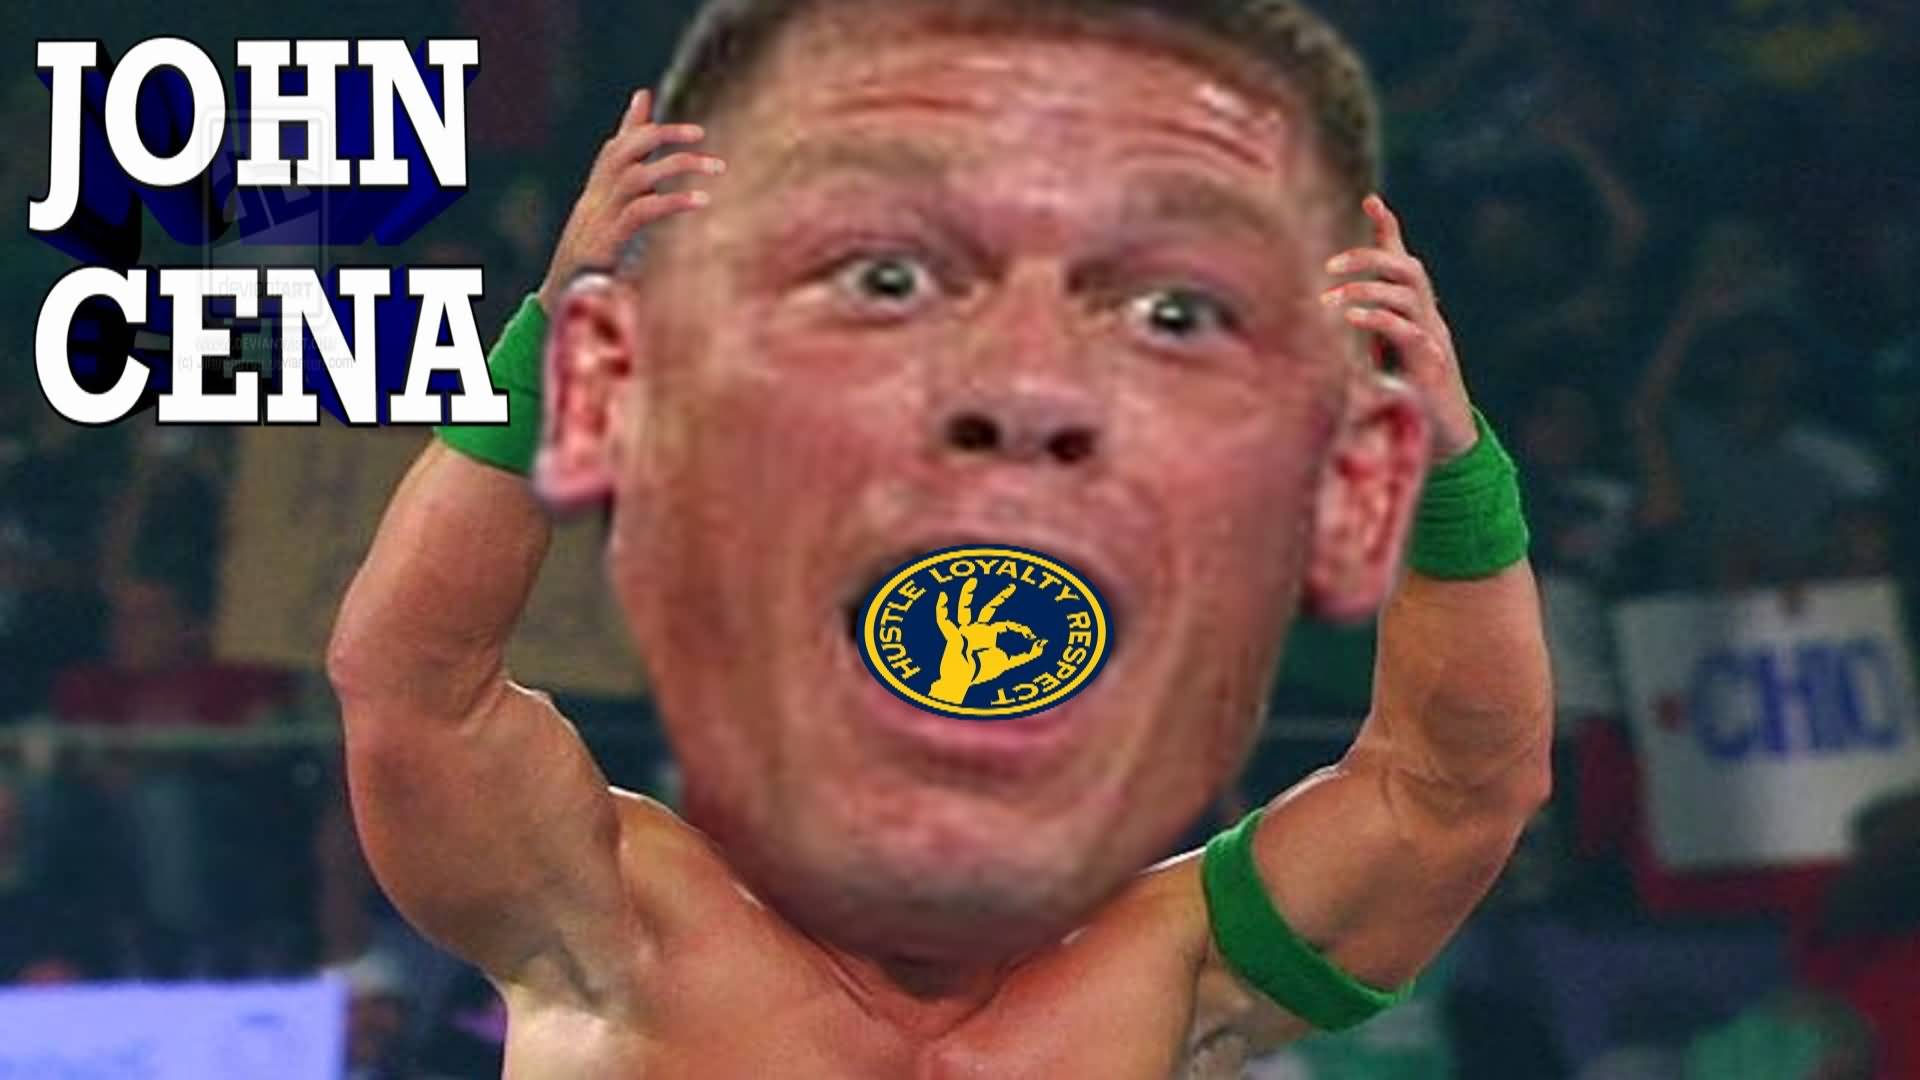 20 Very Funny John Cena Meme Pictures Picss Mine.